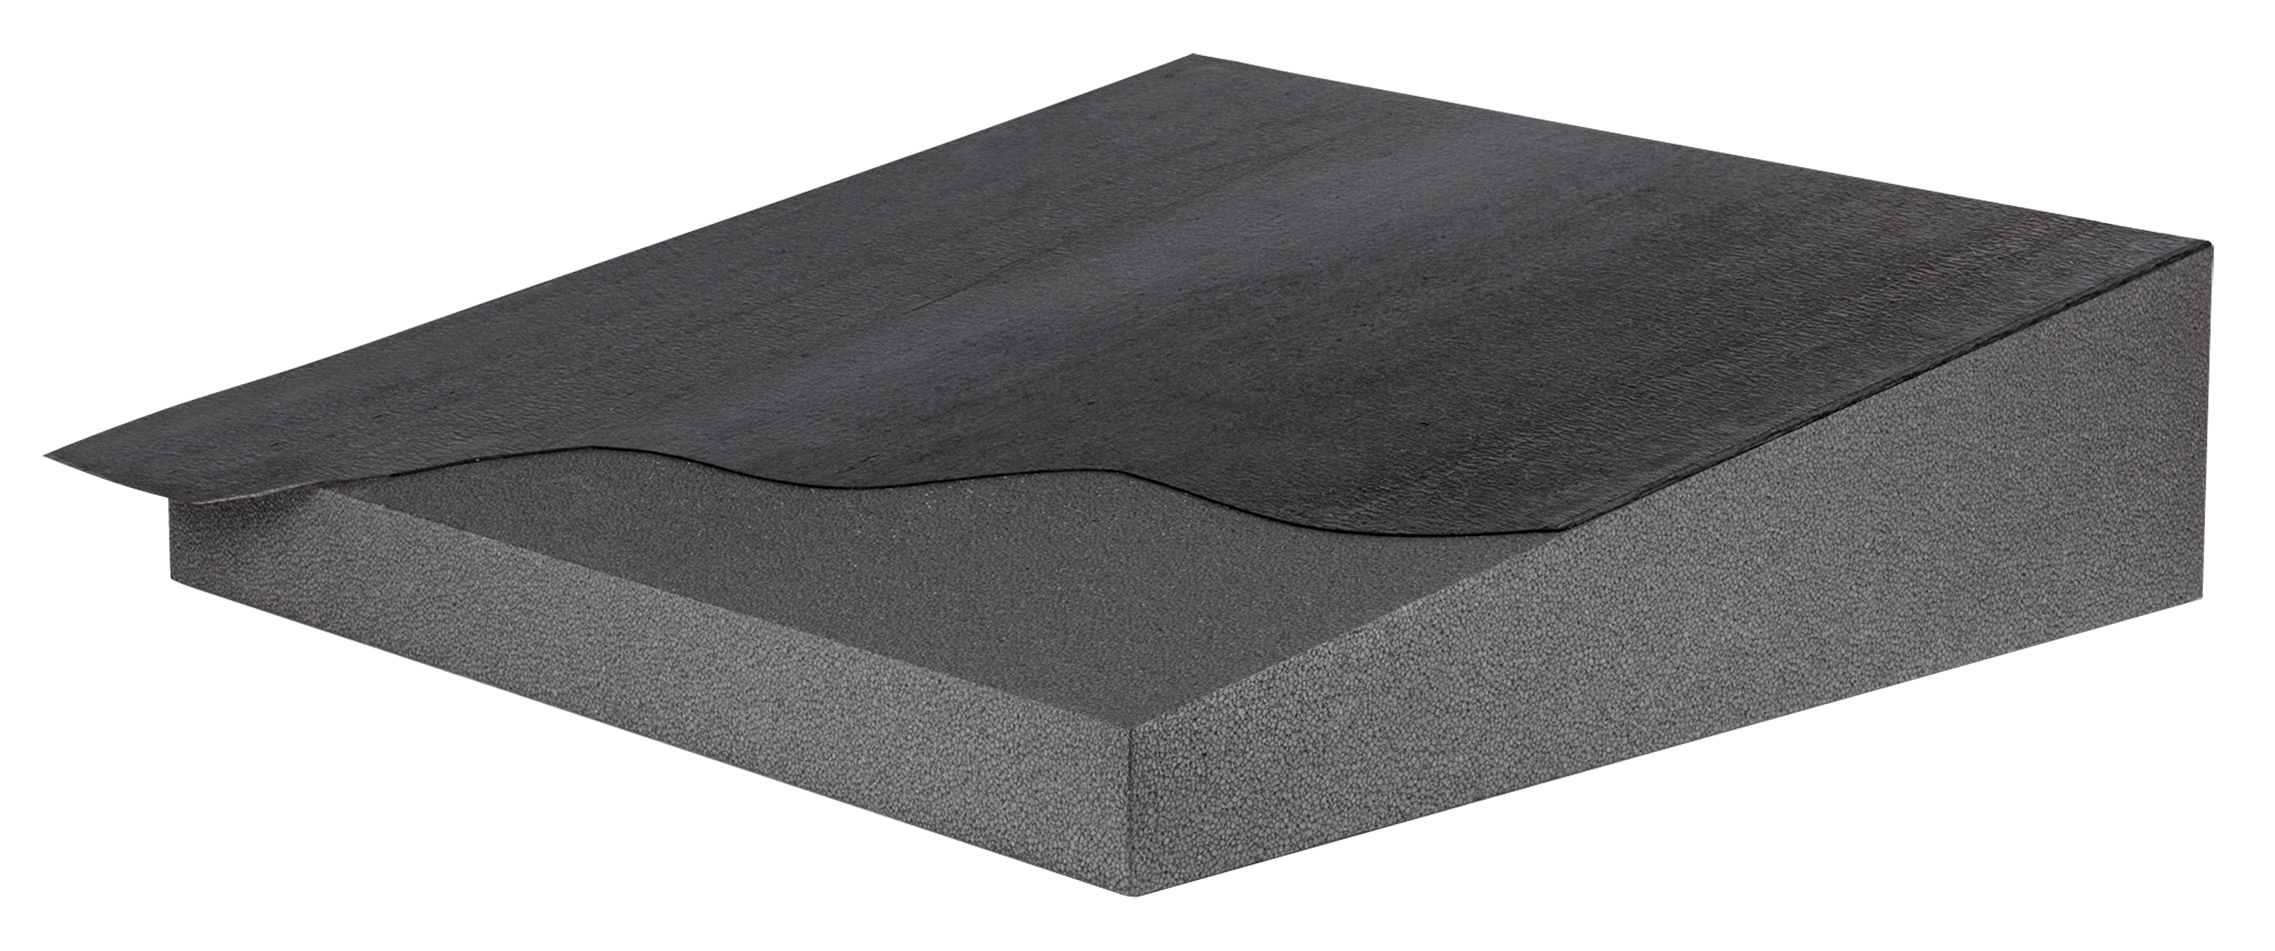 isolamento e impermeabilizzazione tetto piano con pannelli polistirolo con grafite Styr P Dark nuova fopan